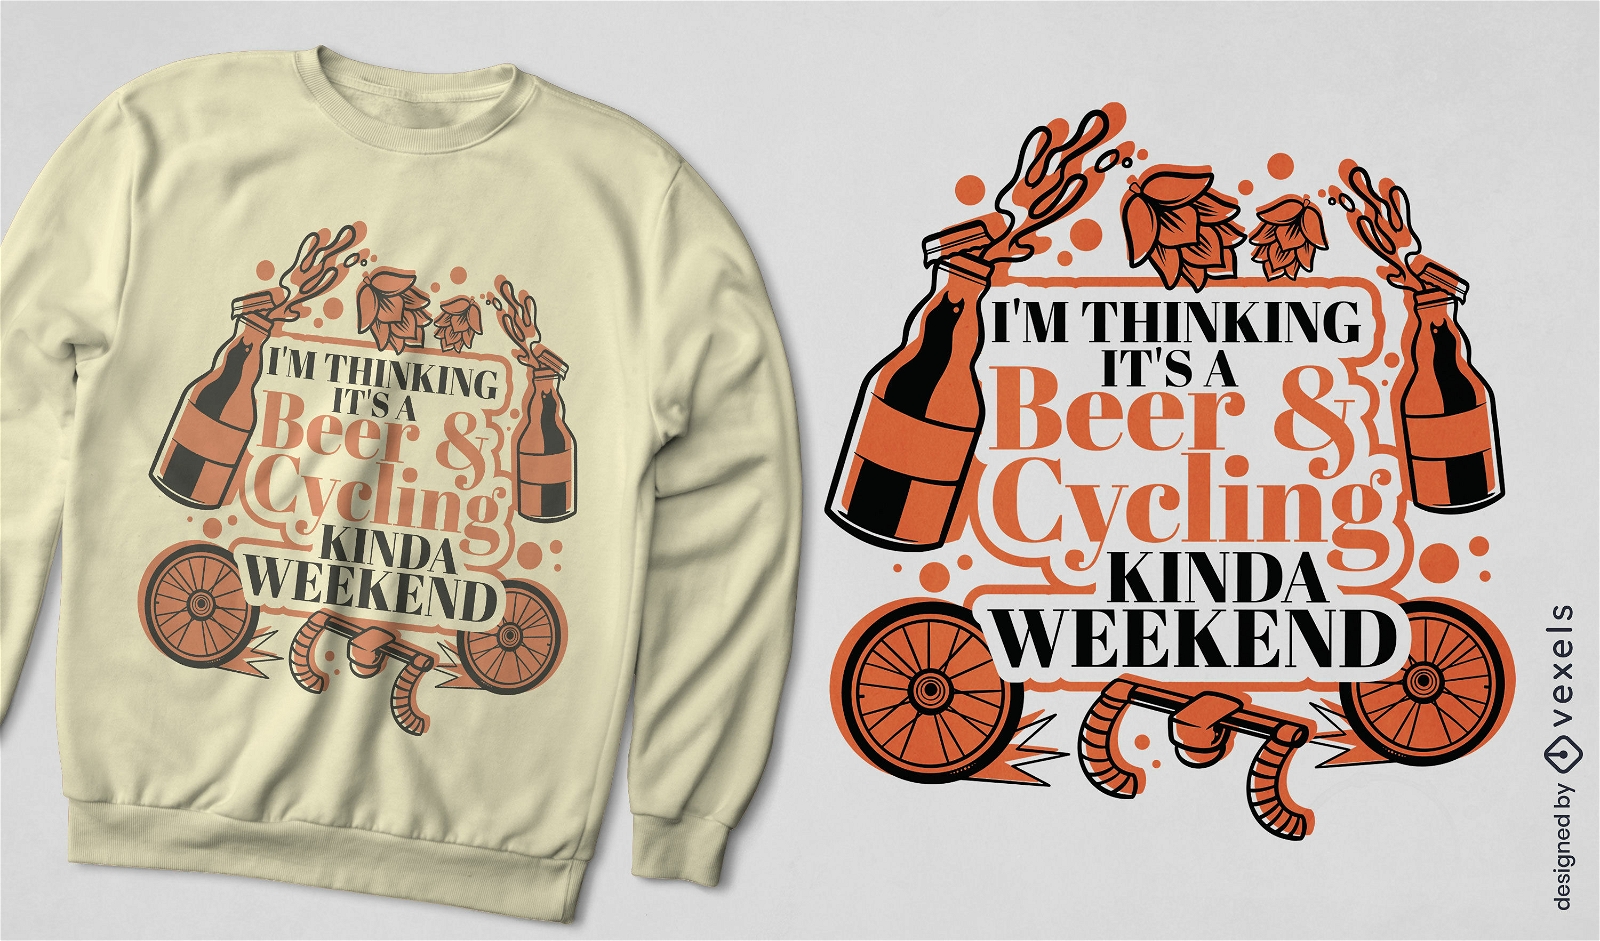 Dise?o de camiseta de bebida de cerveza y bicicleta.